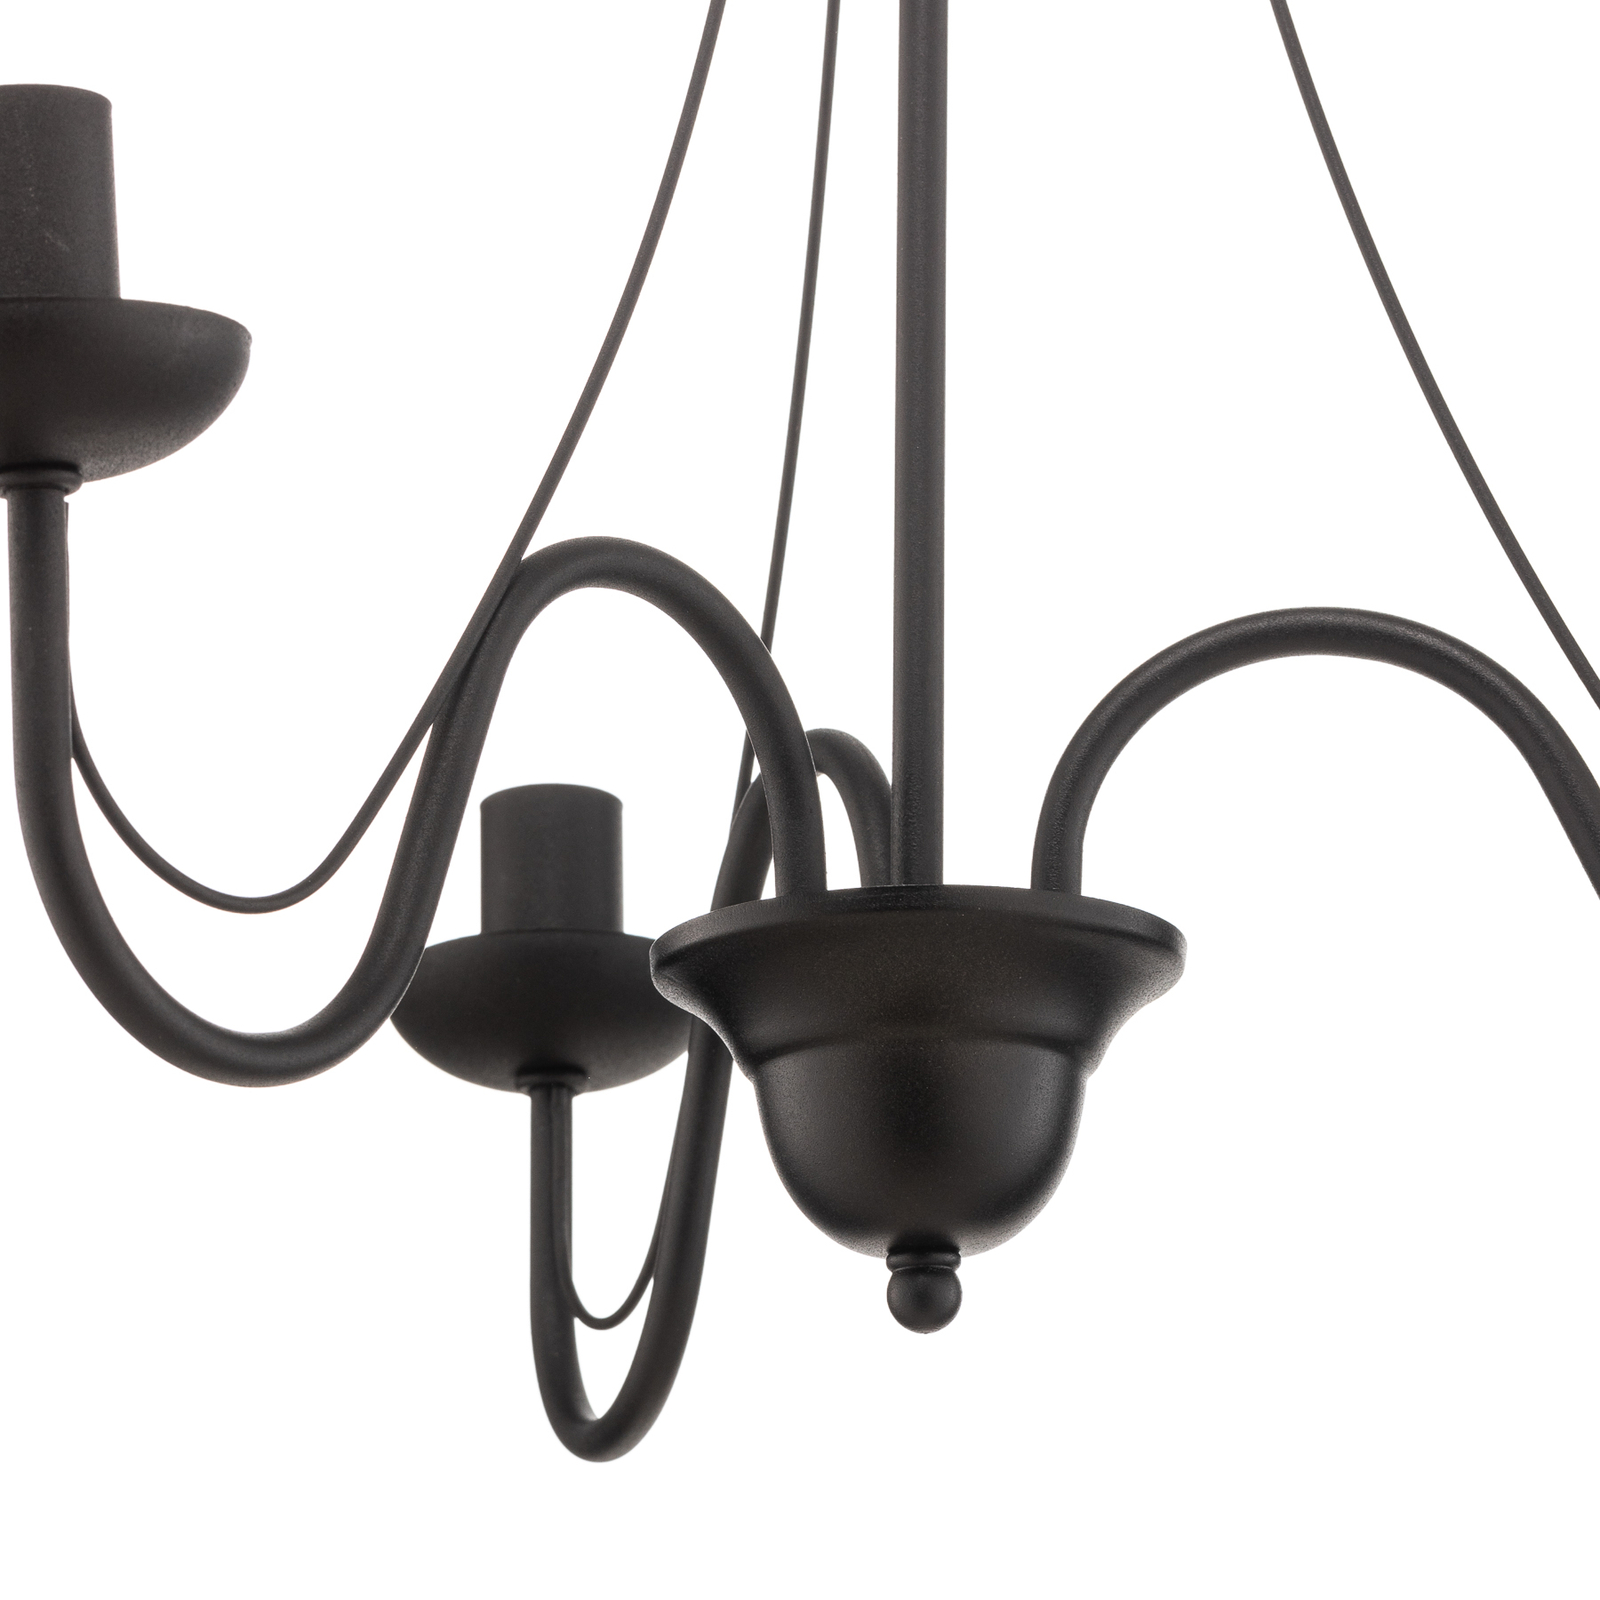 Malbo 3-bulb chandelier in black